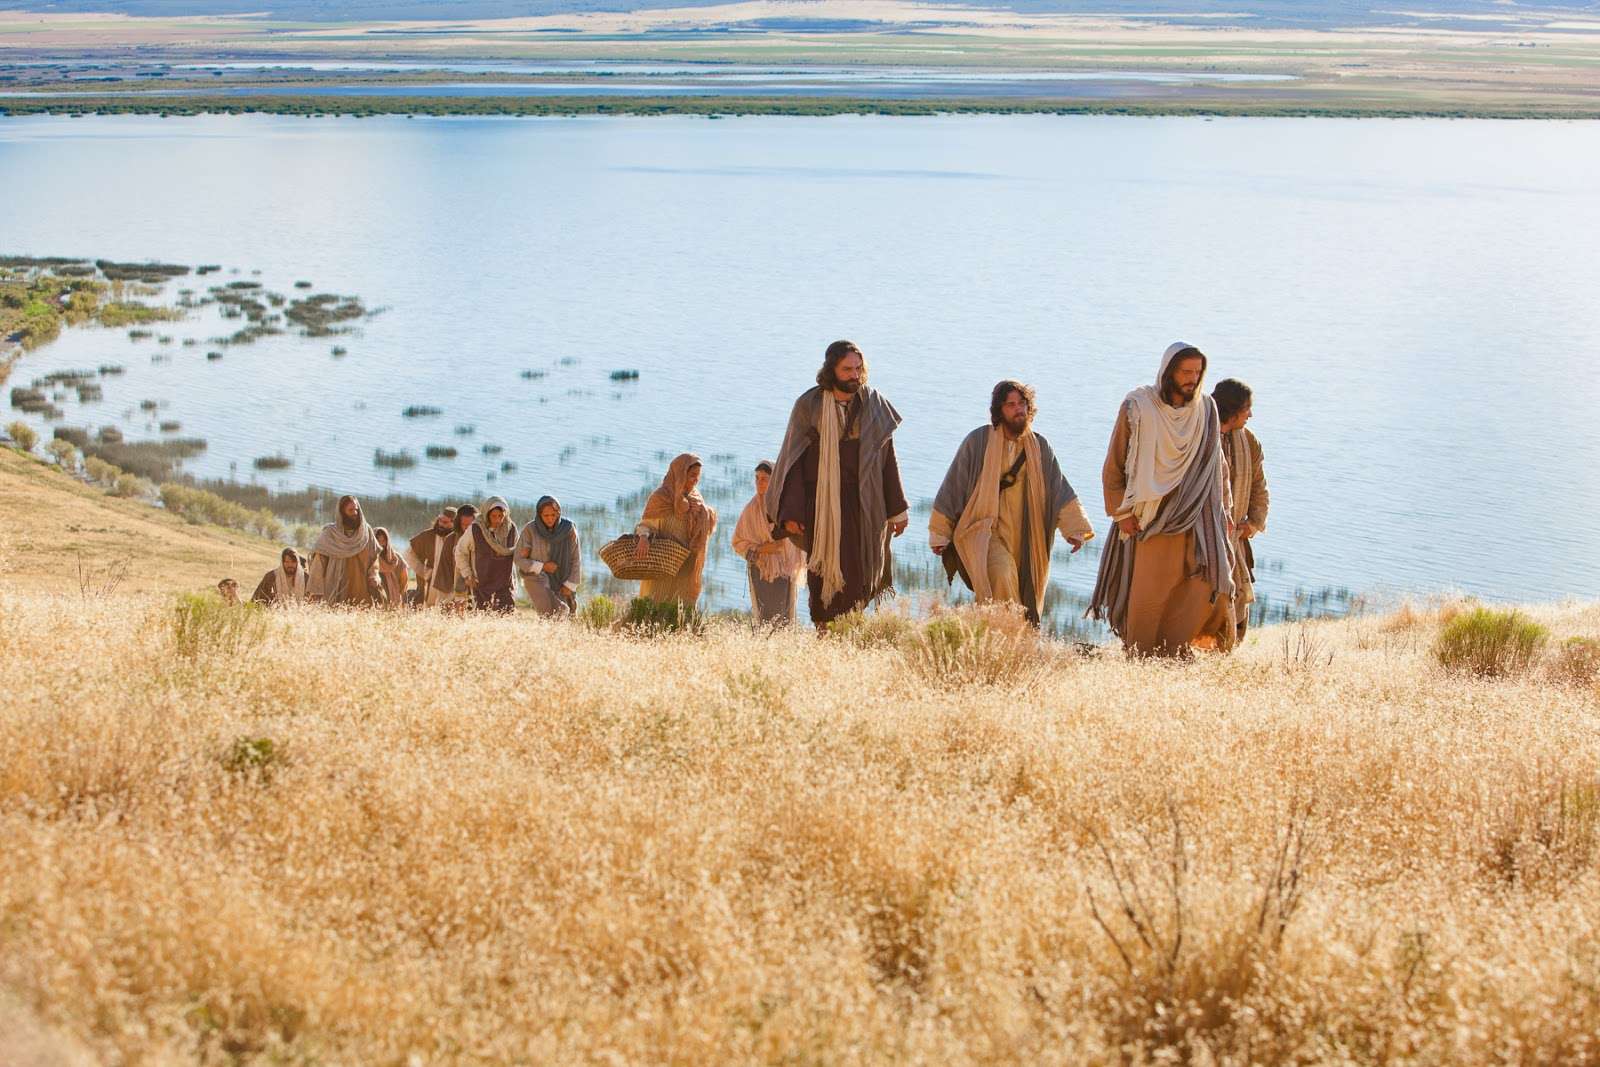 Jézus és a tanítványok online puzzle